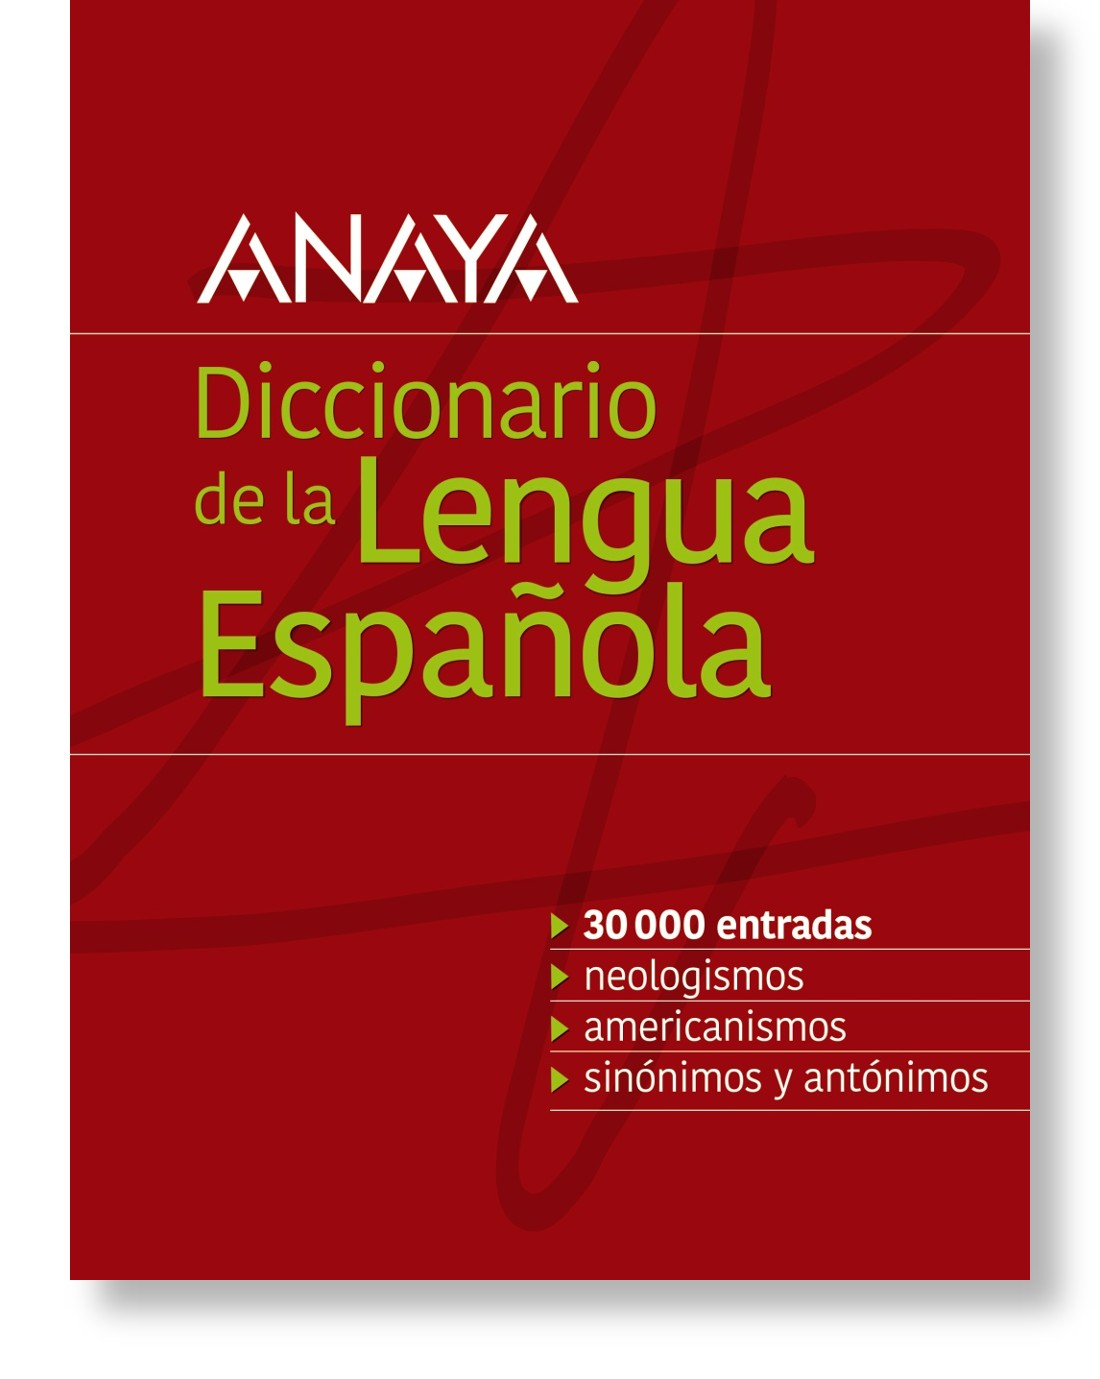 Diccionario Anaya de la Lengua